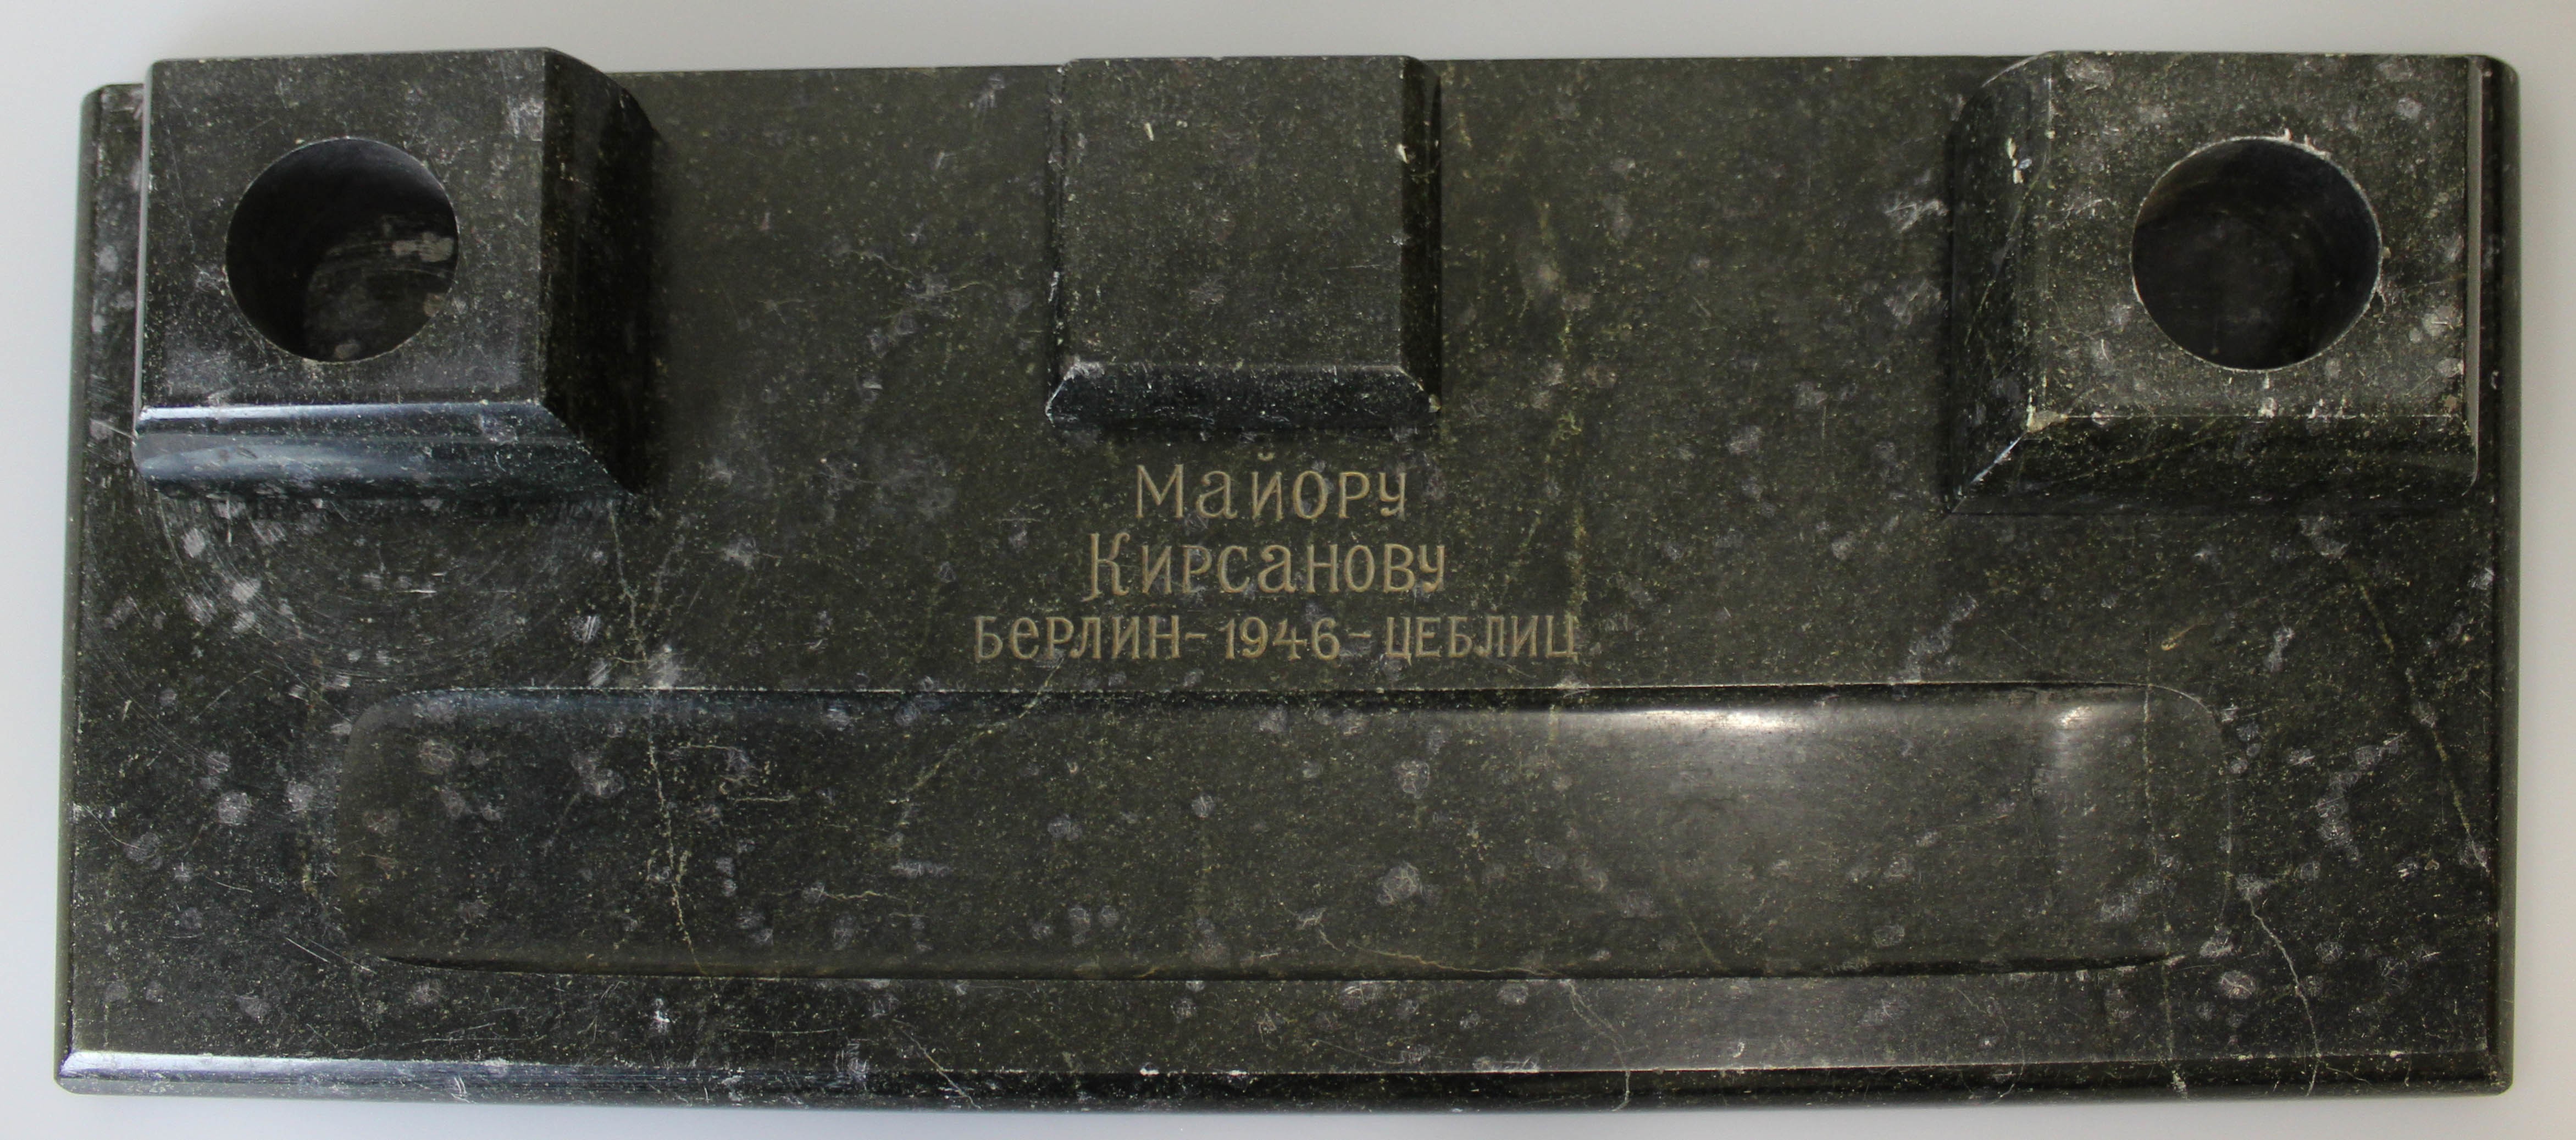 Schreibtischgarnitur mit russischer Schift (Museum Wolmirstedt RR-F)